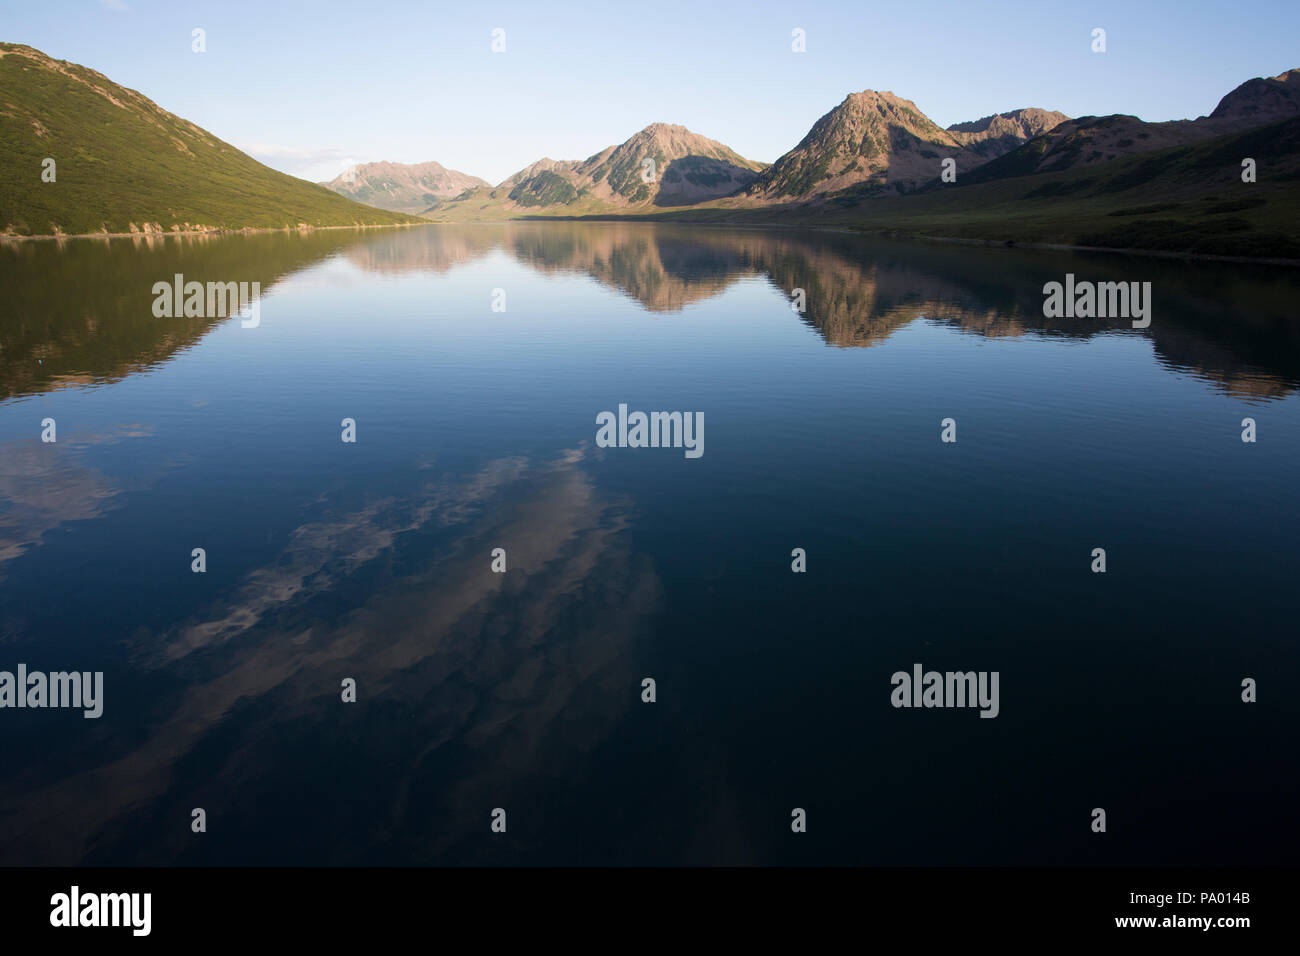 Landscape of remote lake in Kamchatka Stock Photo